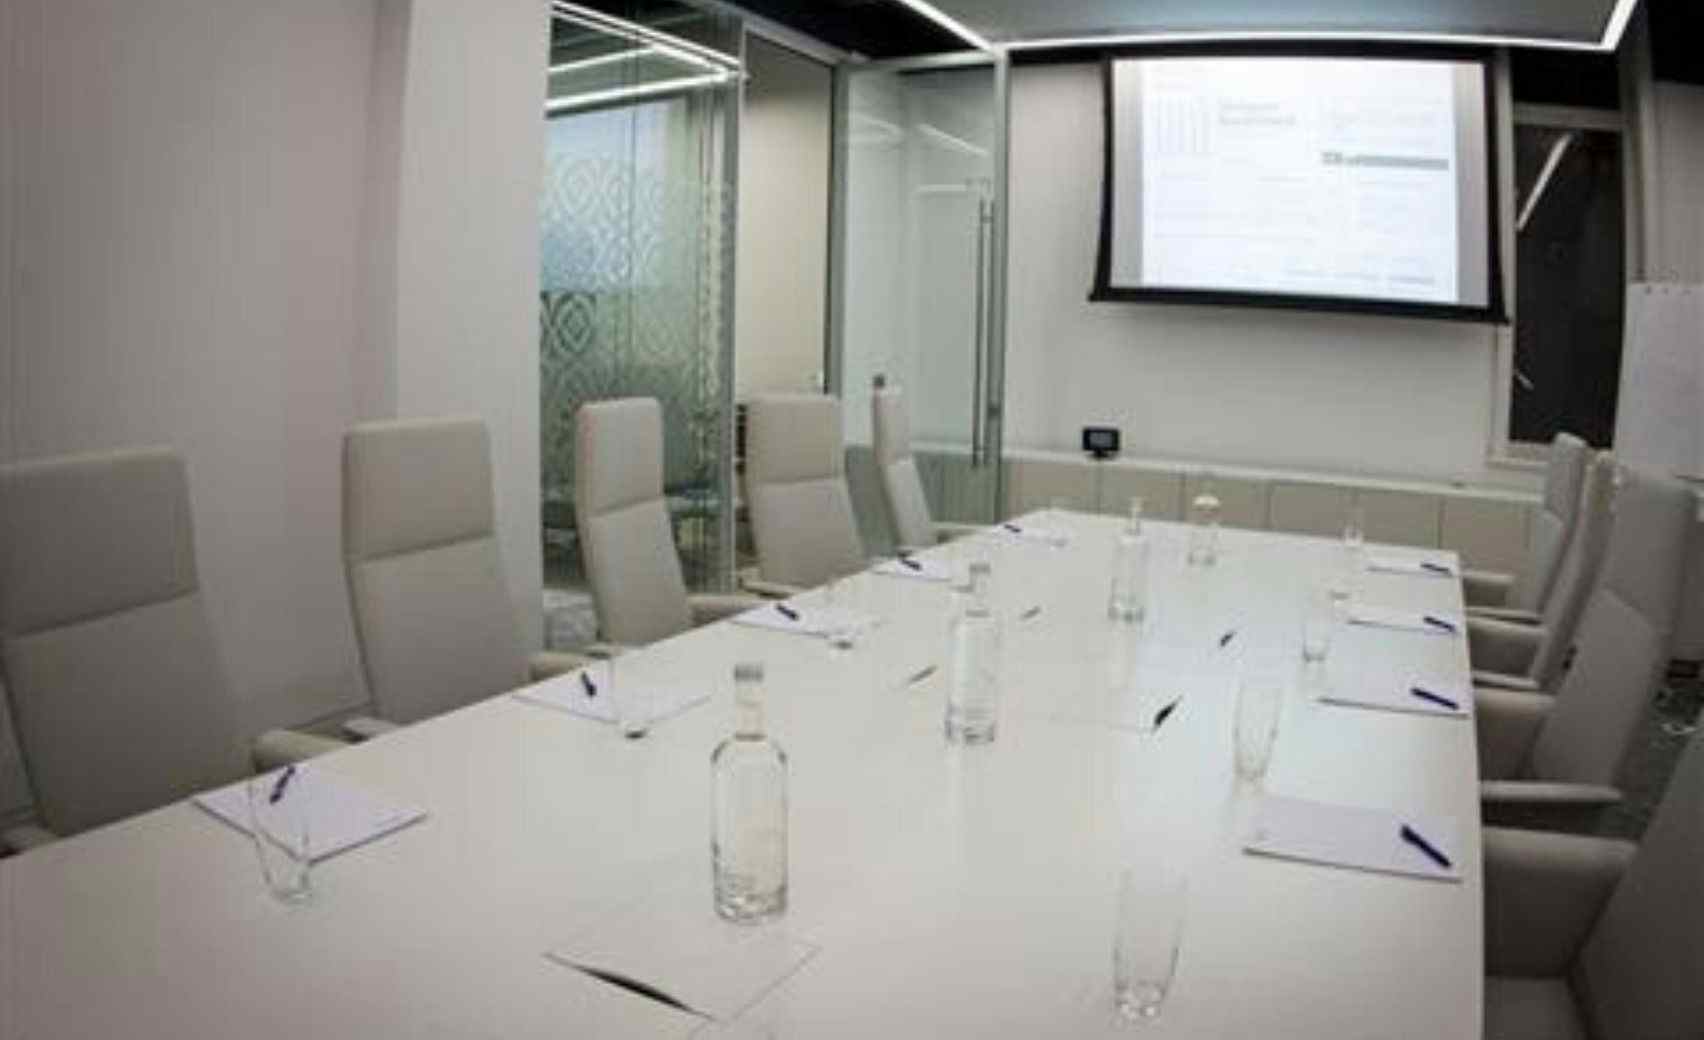 Ground Floor Meeting Room 17, 30 Euston Square